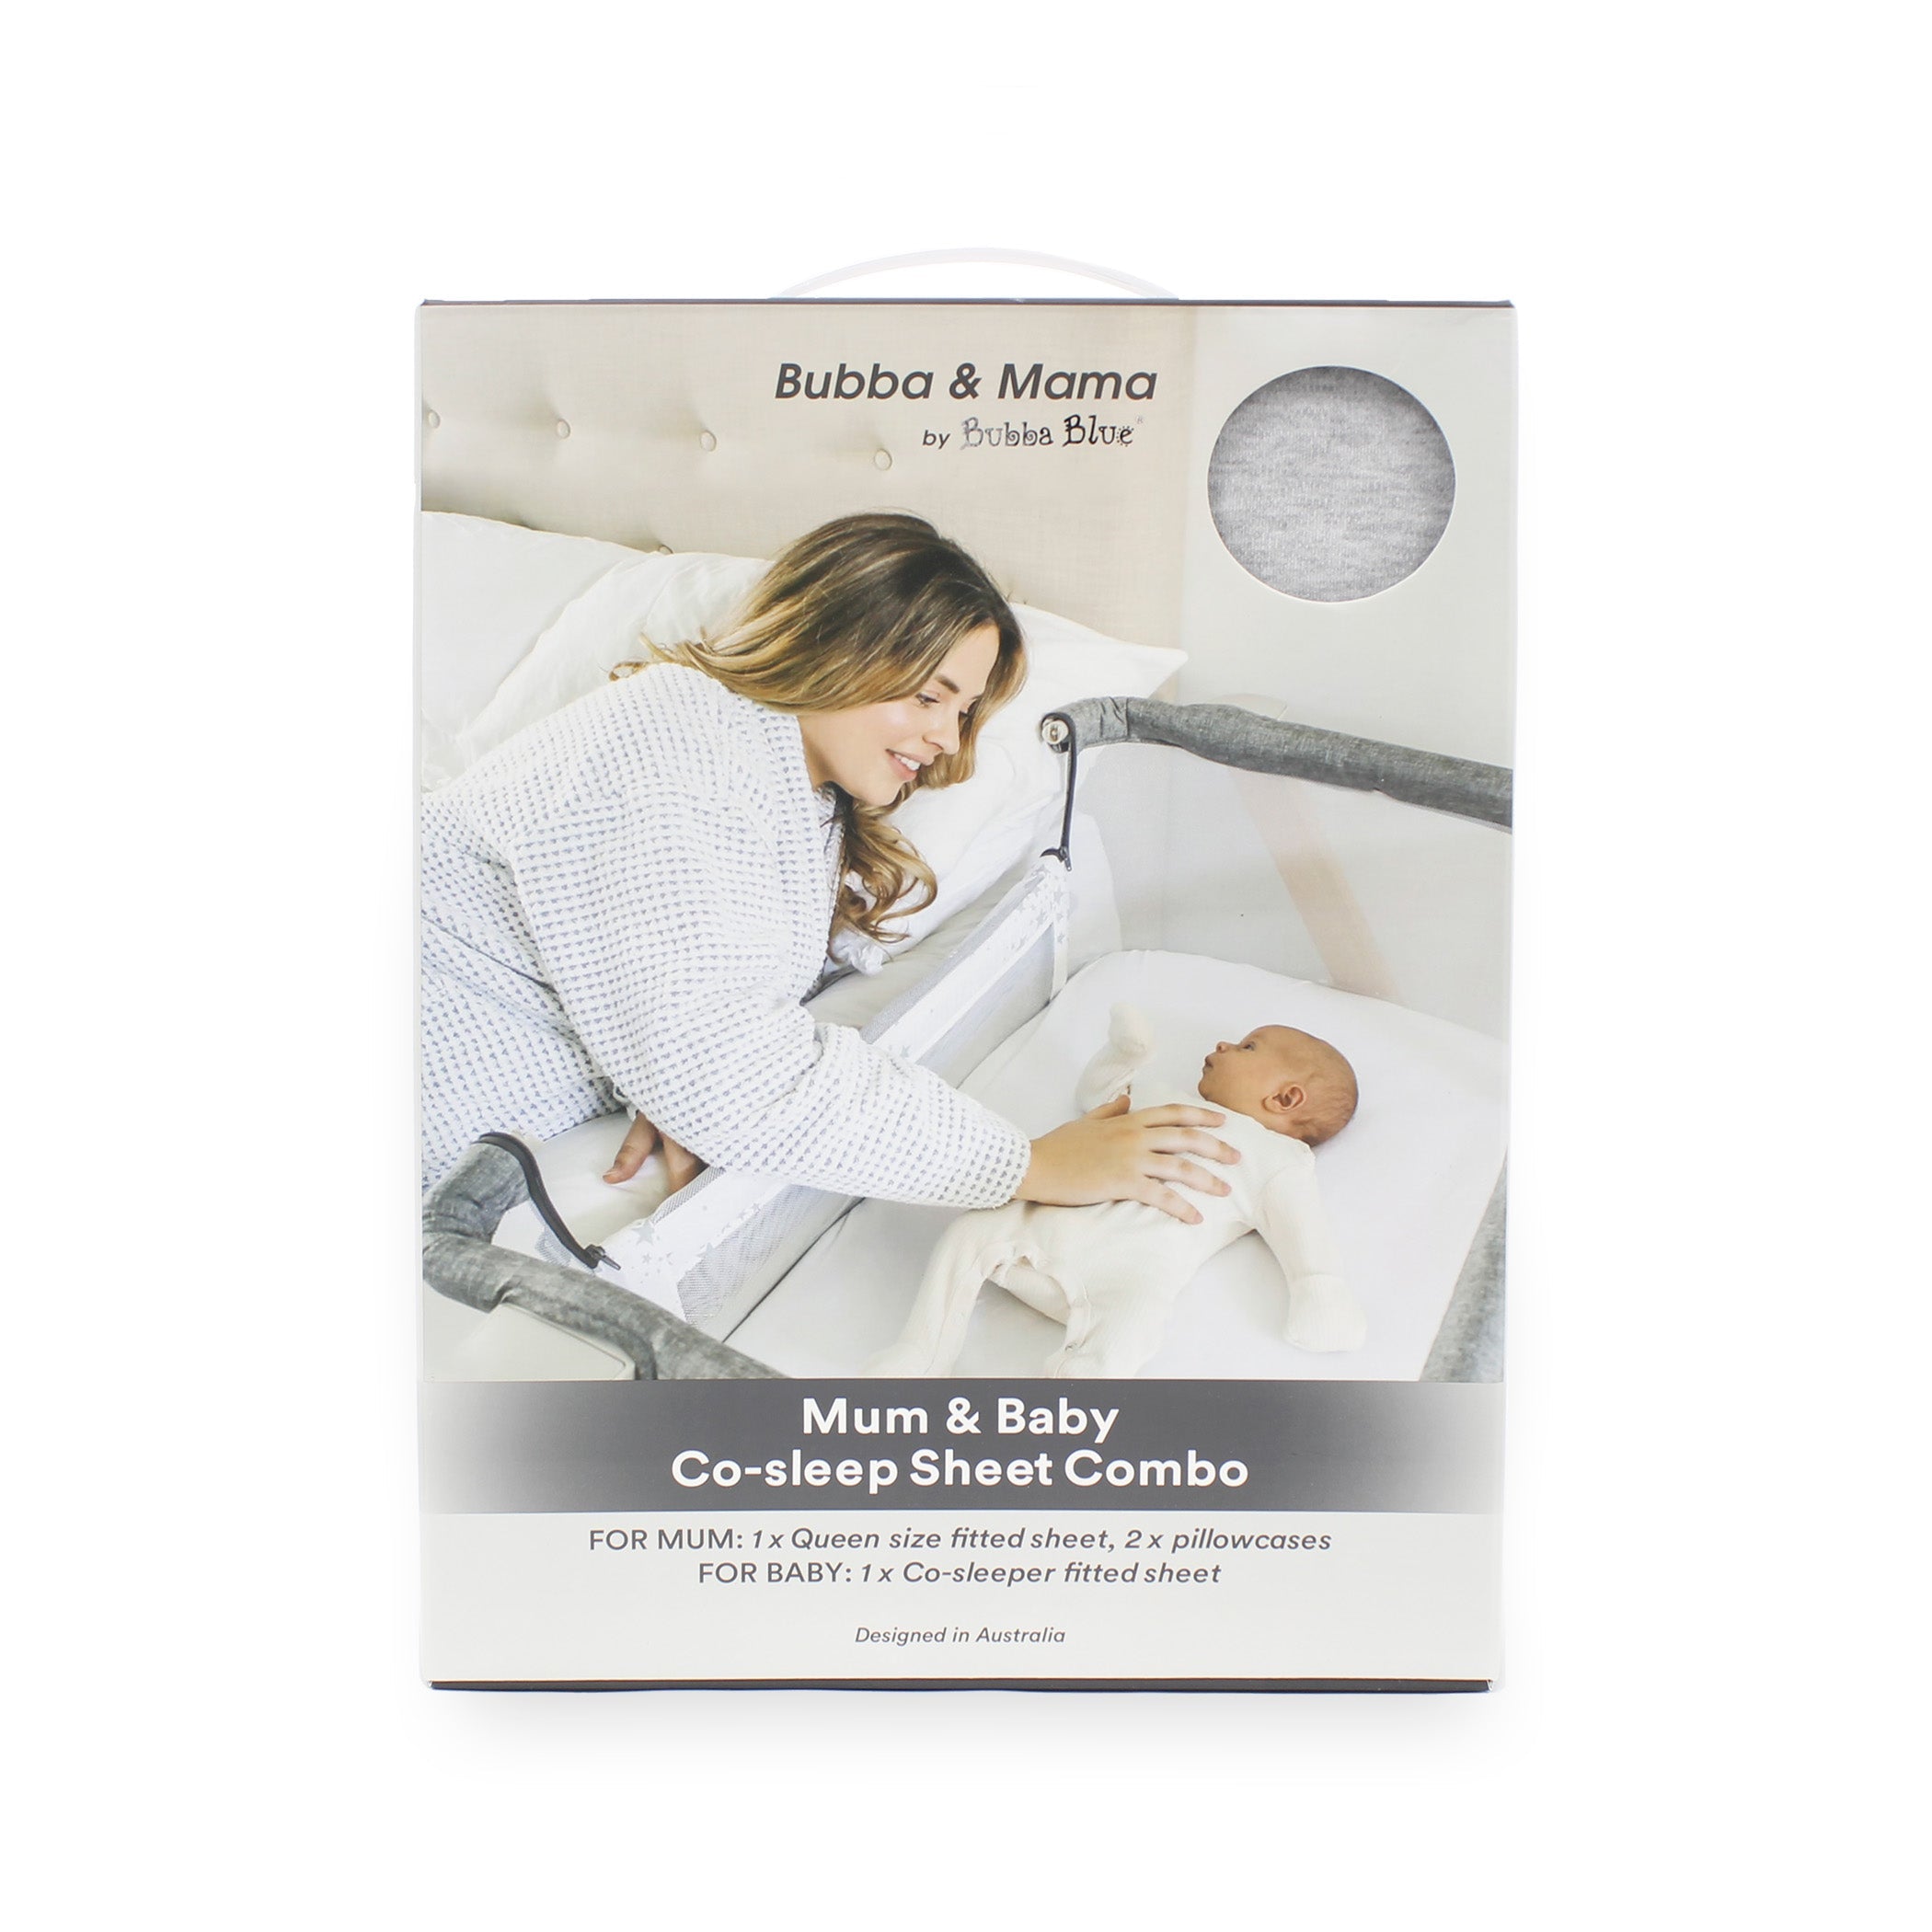 Mum & Baby Co-sleep Sheet Combo - Queen Bed